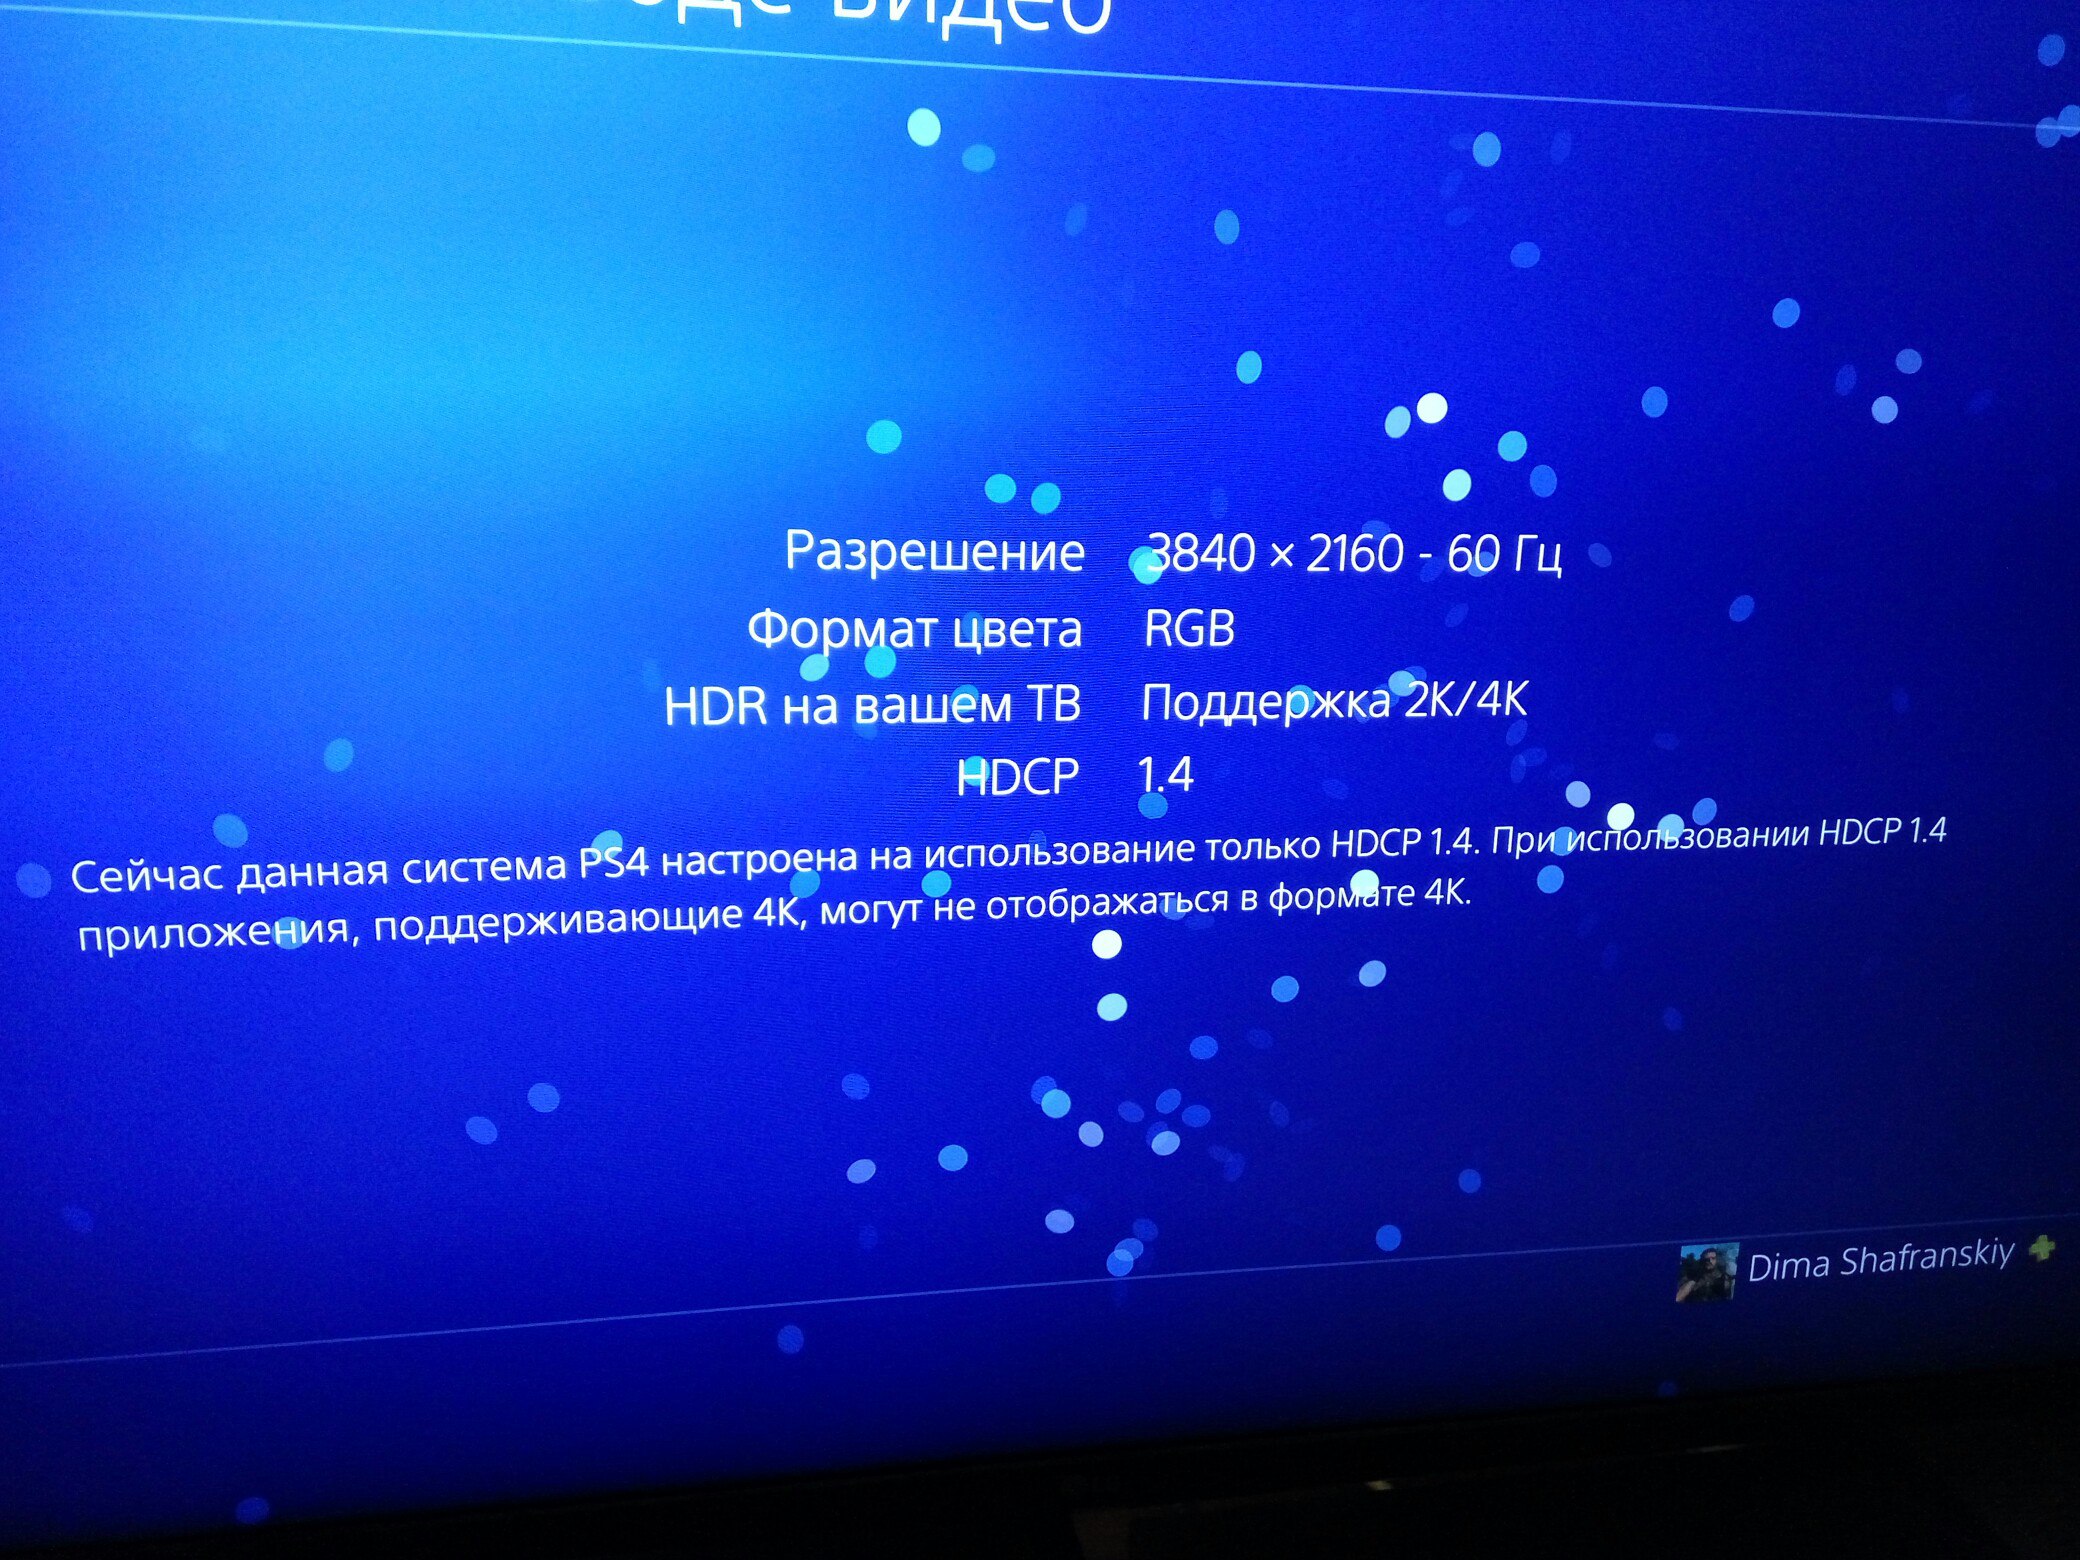 PS4 Pro] Проблема с выводом изображения в 4К